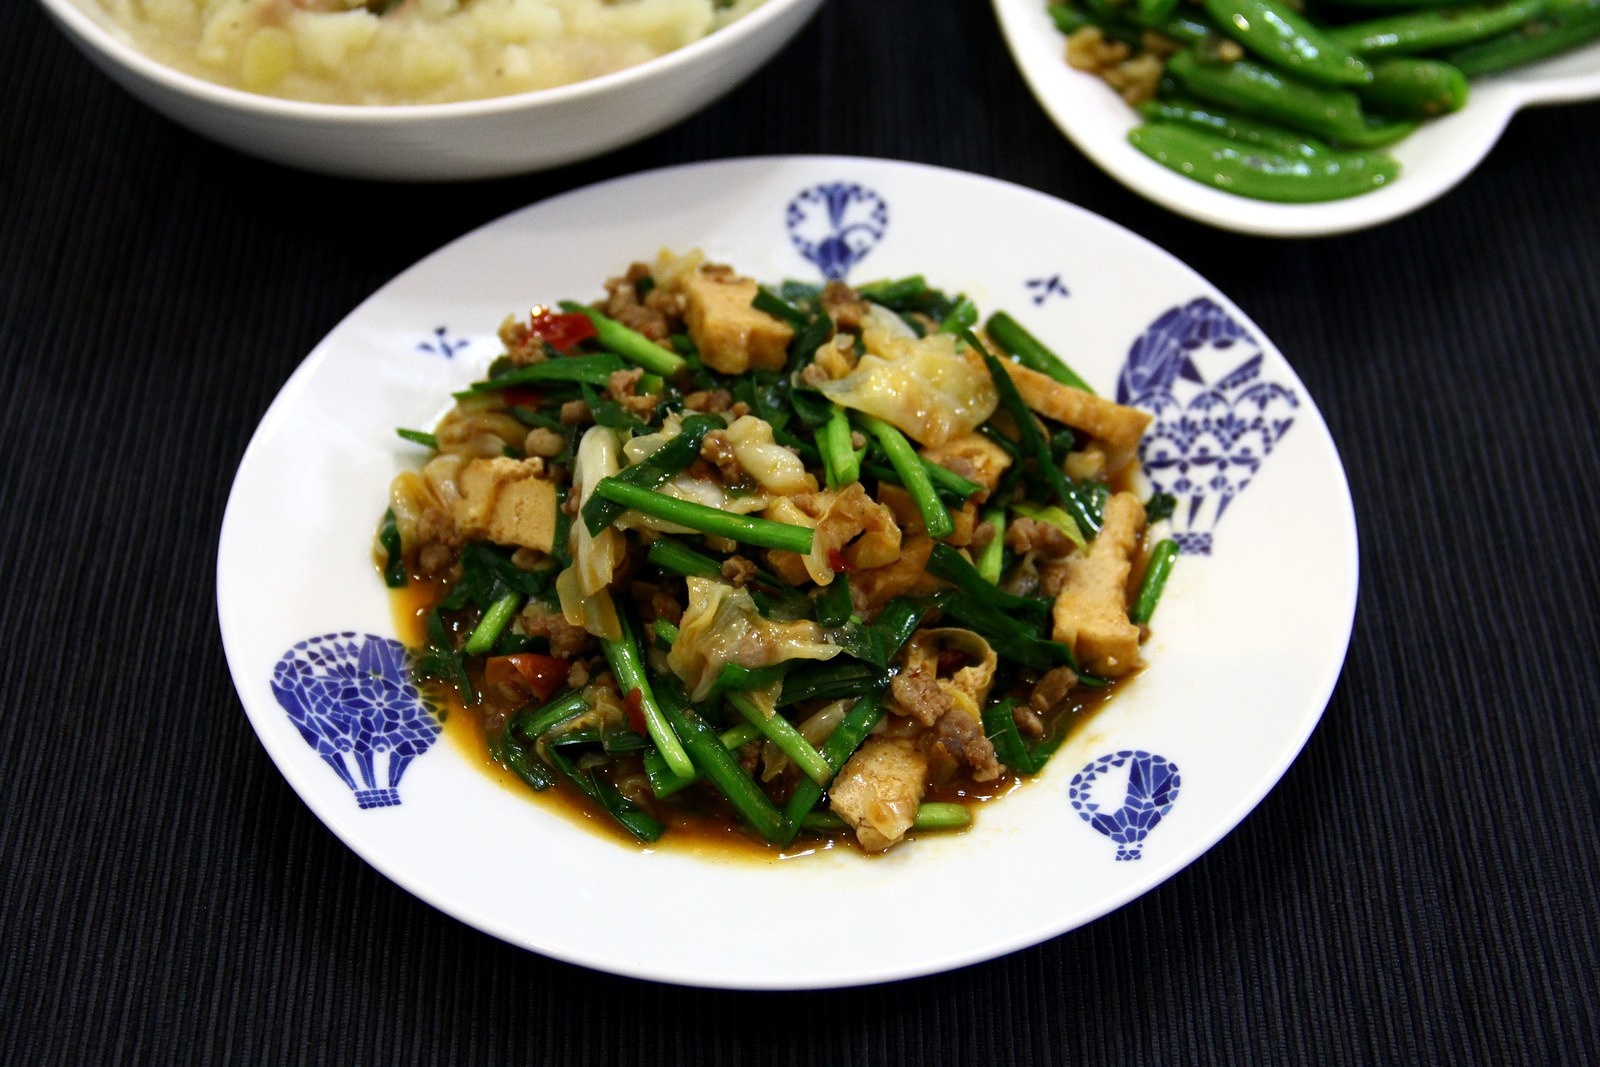 《昨日的美食》之油豆腐、韭菜、高丽菜、猪绞肉的味噌热炒